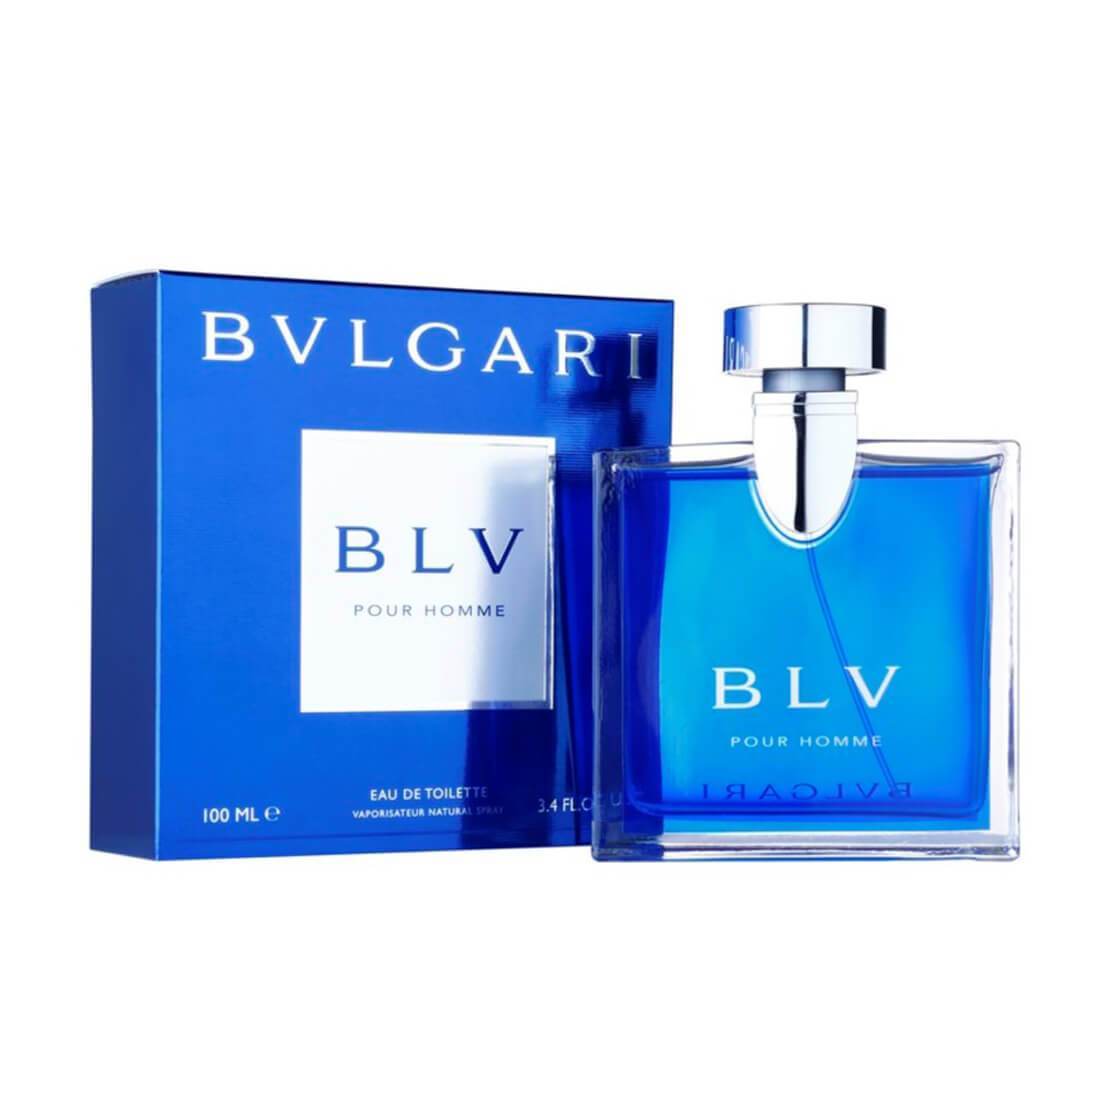 Bvlgari Blv EDT Perfume For Men - 100ml